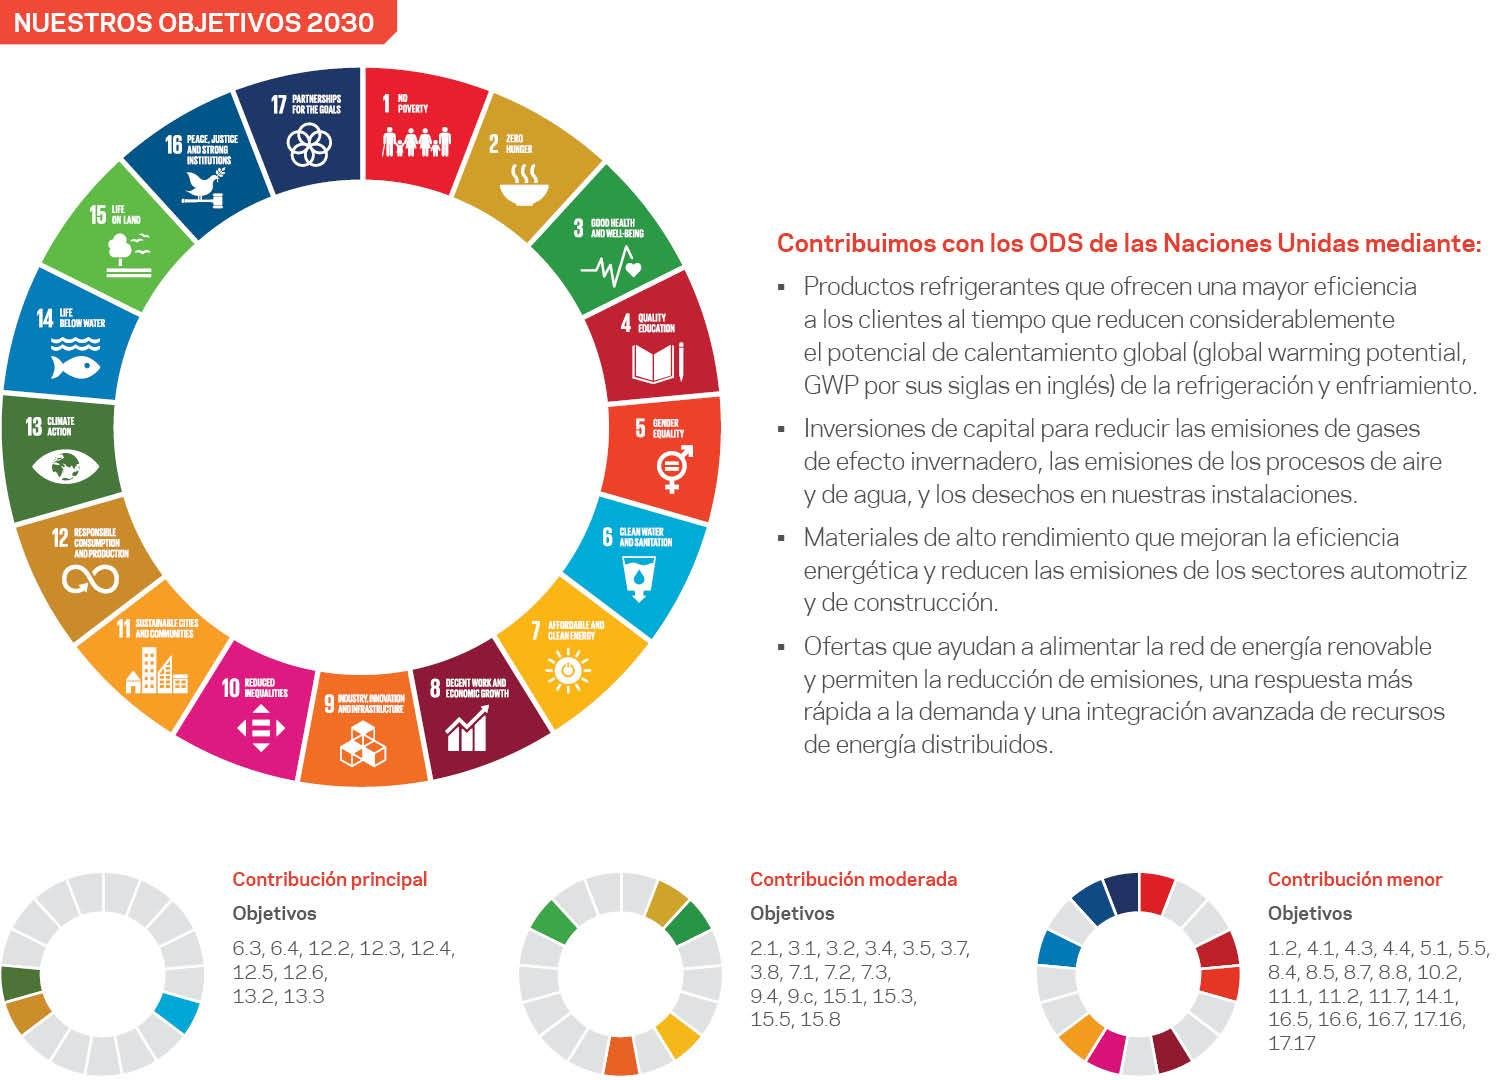  Una infografía que explica el impacto que tienen nuestros objetivos de la CDN en los Objetivos de Desarrollo Sostenible de las Naciones Unidas (ONU ODS).